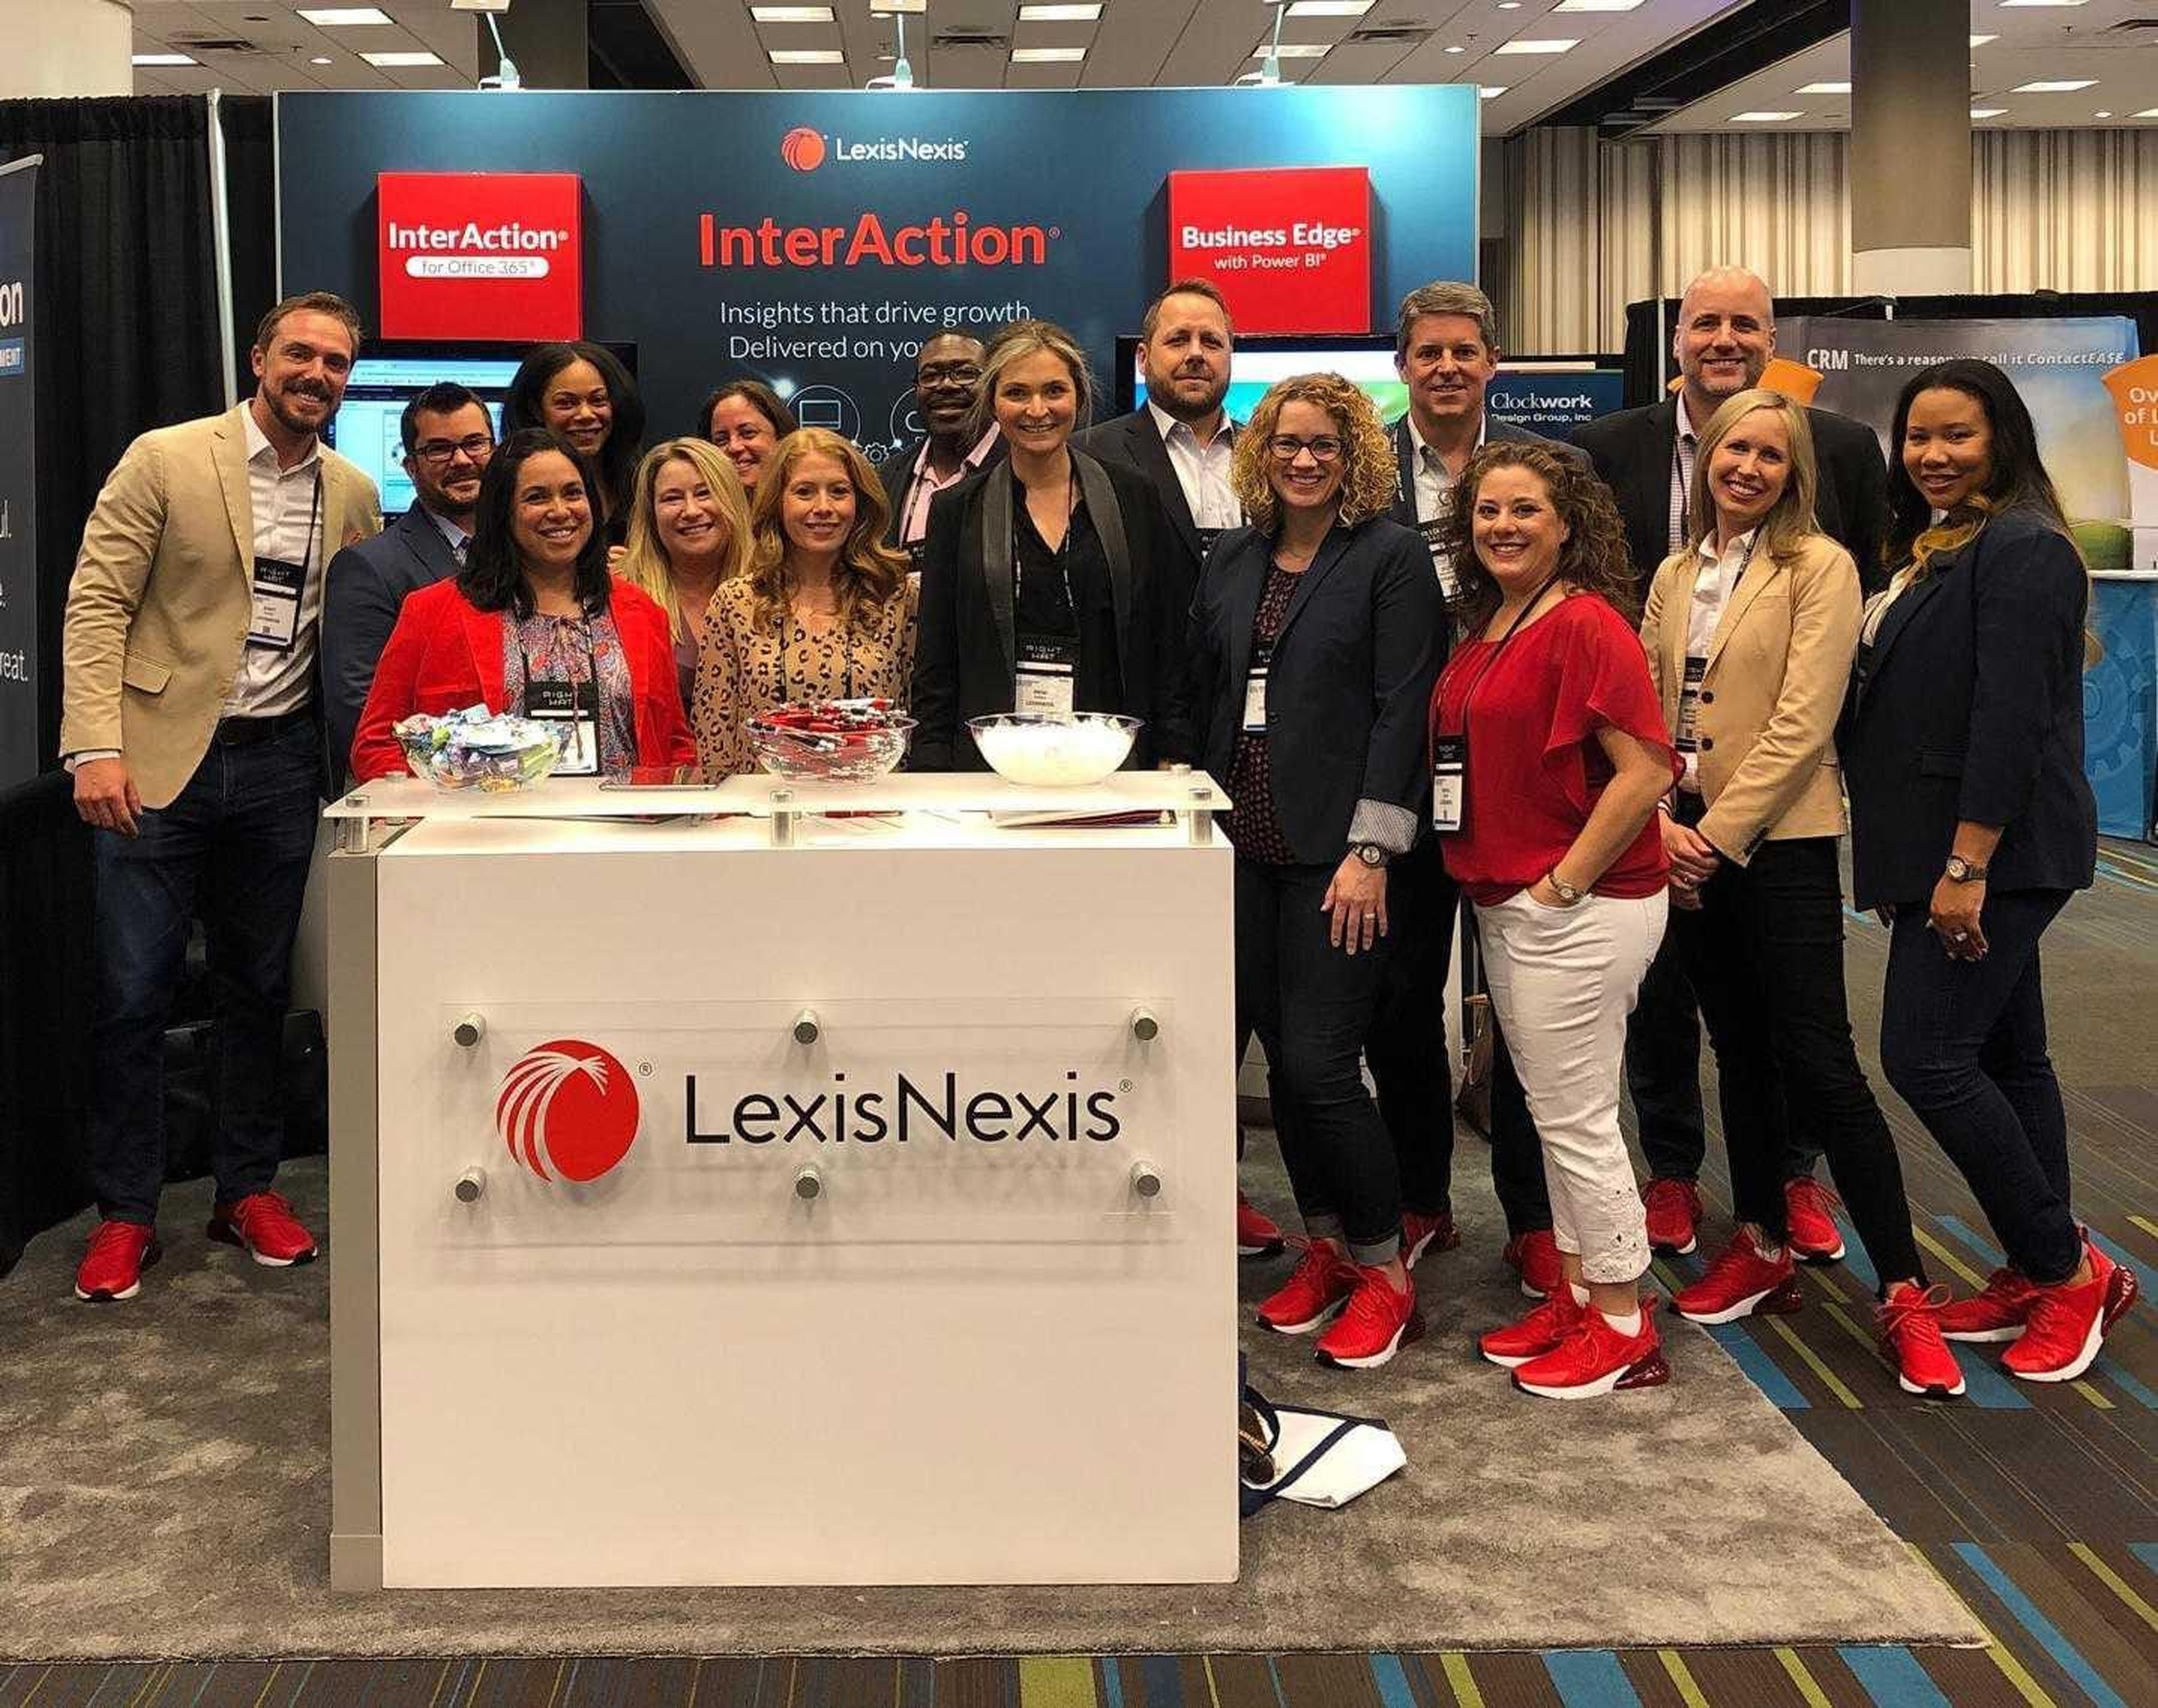 LexisNexis employees